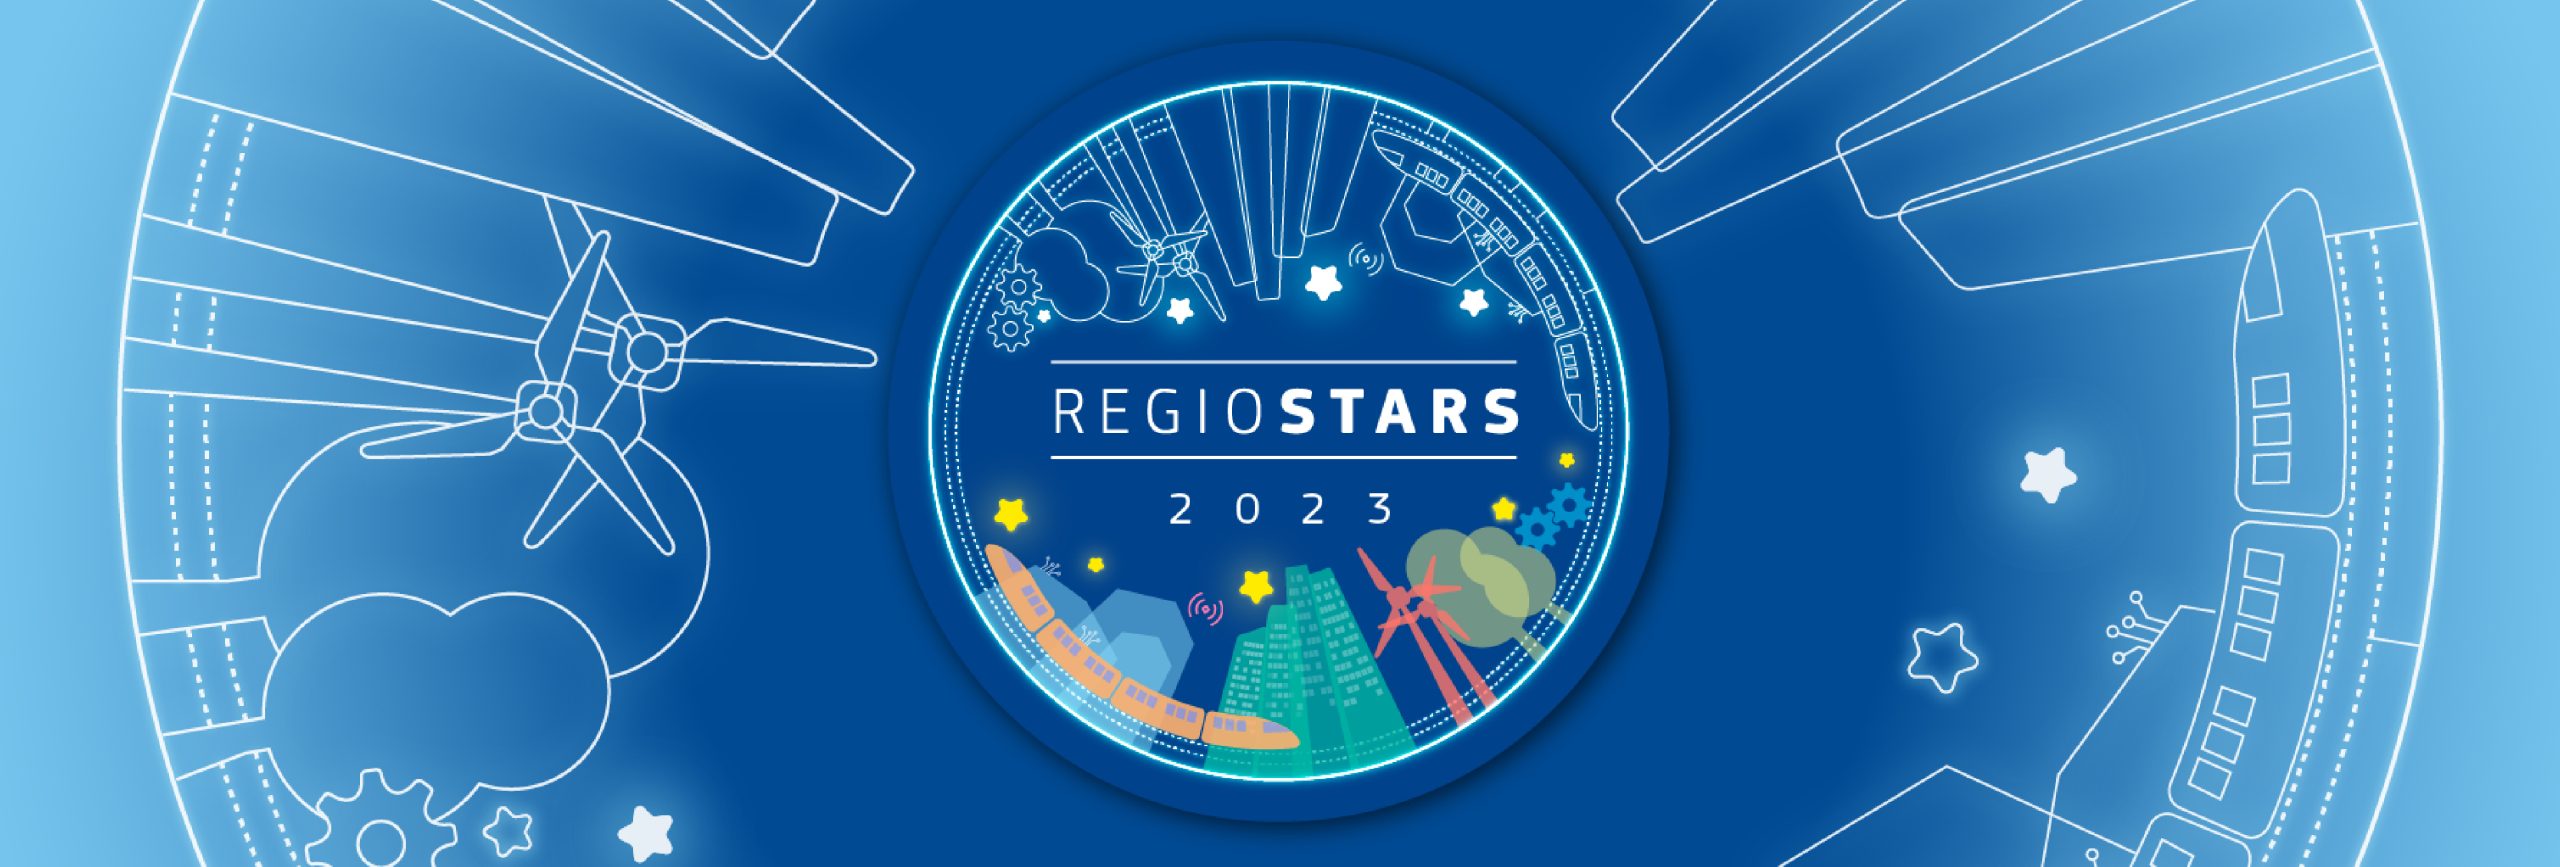 REGIOSTARS 2023, il concorso della Commissione Europea che premia i migliori progetti della politica di coesione